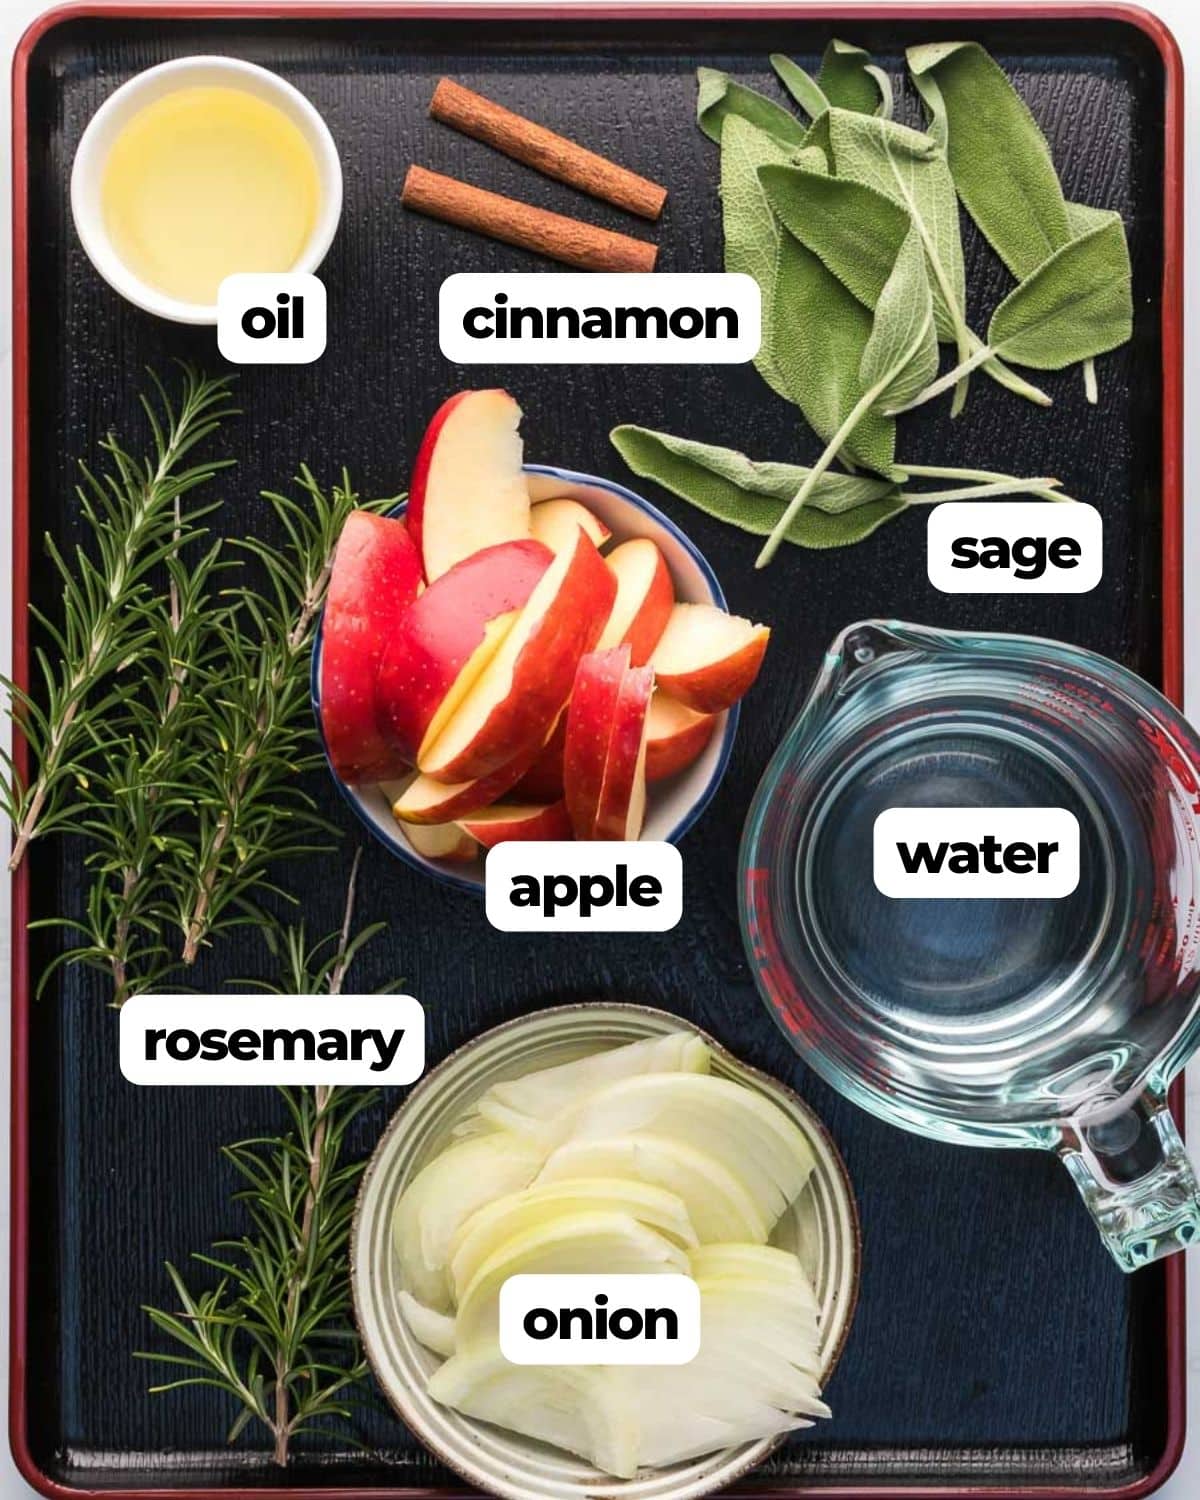 Turkey brine aromatics labeled ingredients